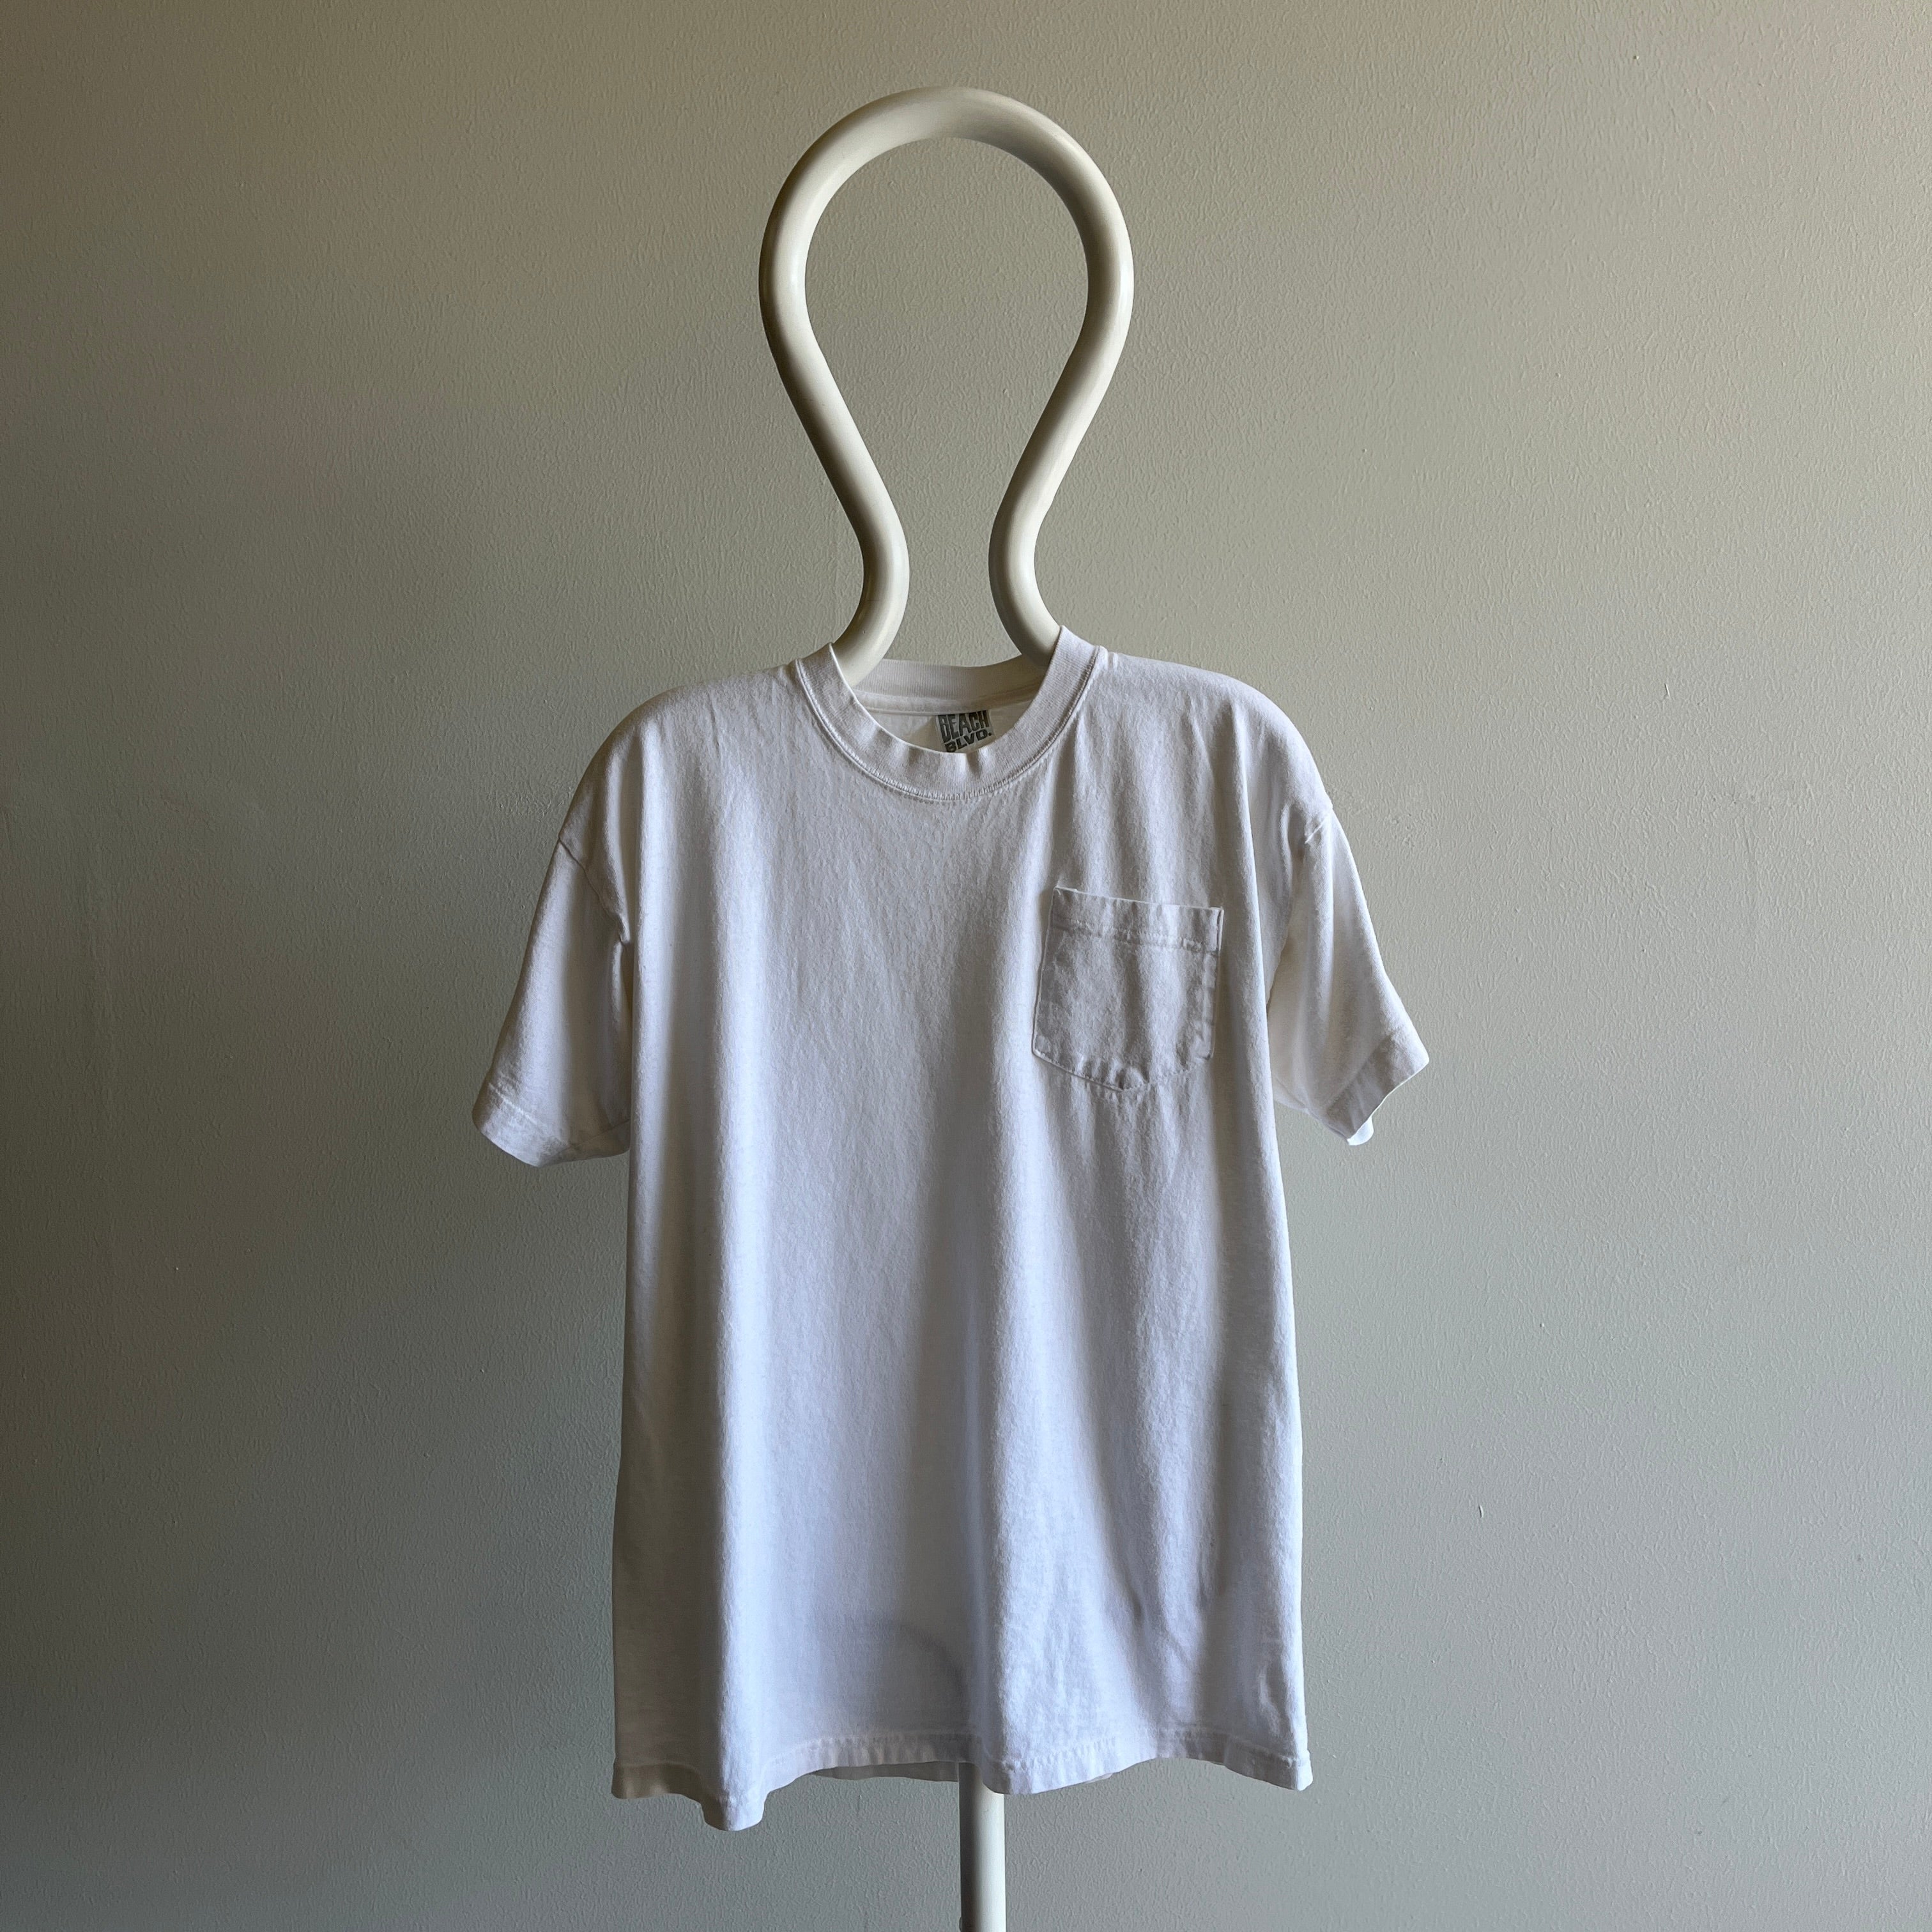 T-shirt de poche en coton blanc vierge des années 1980 par Beach Blvd.